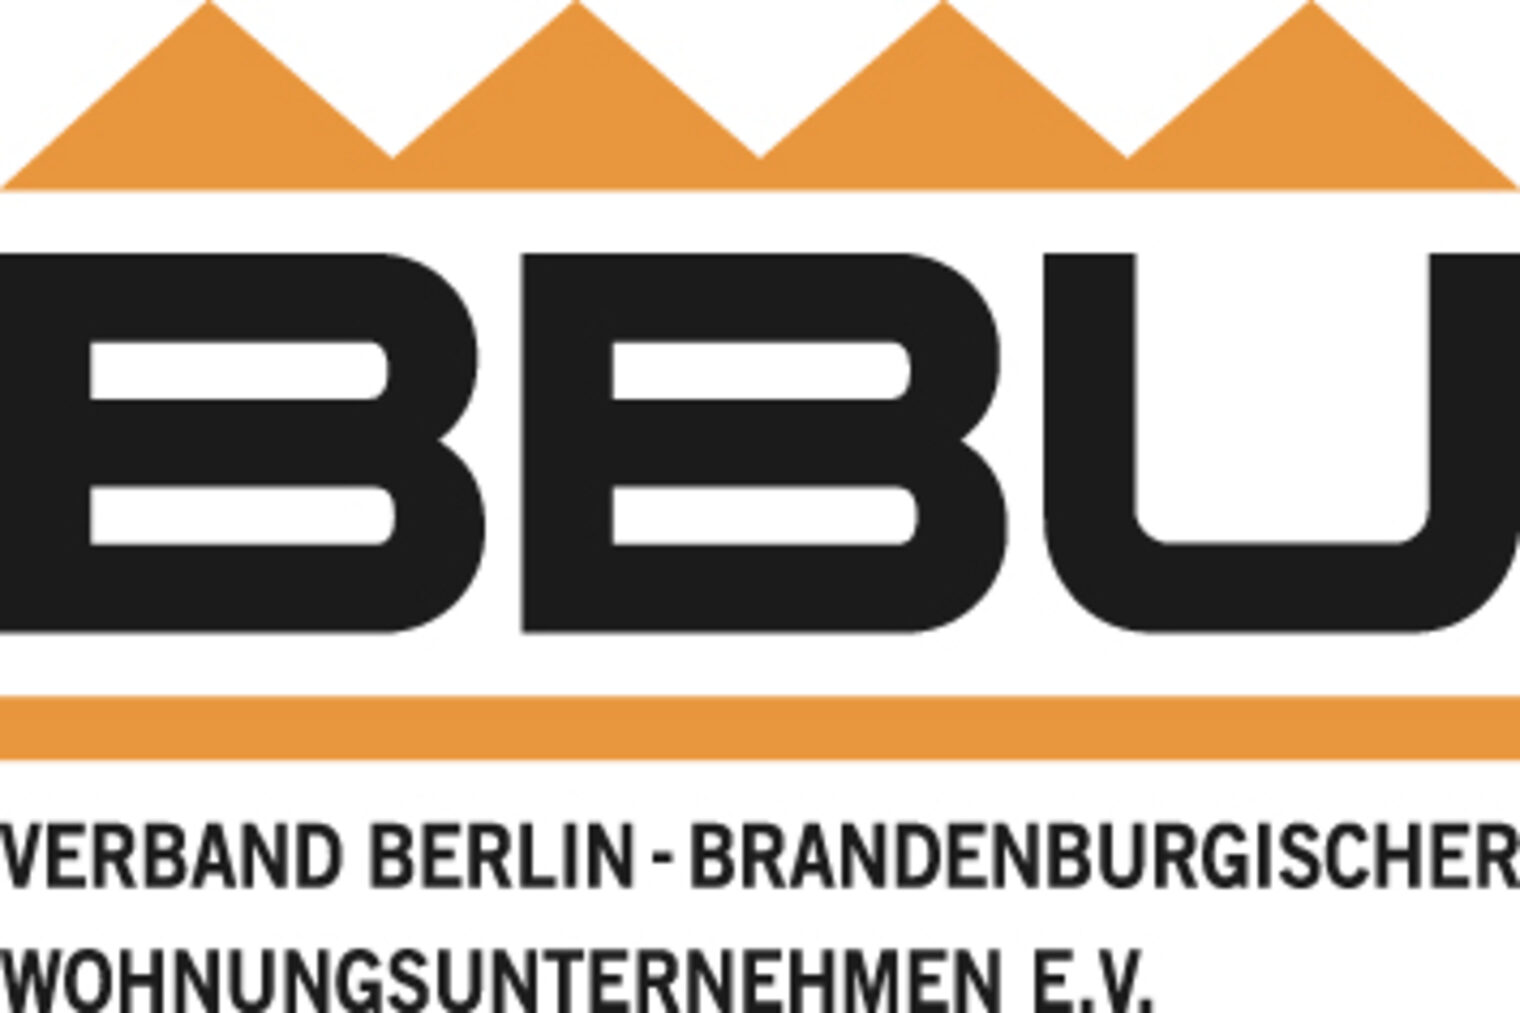 Verband Berlin-Brandenburgischer Wohnungsunternehmen